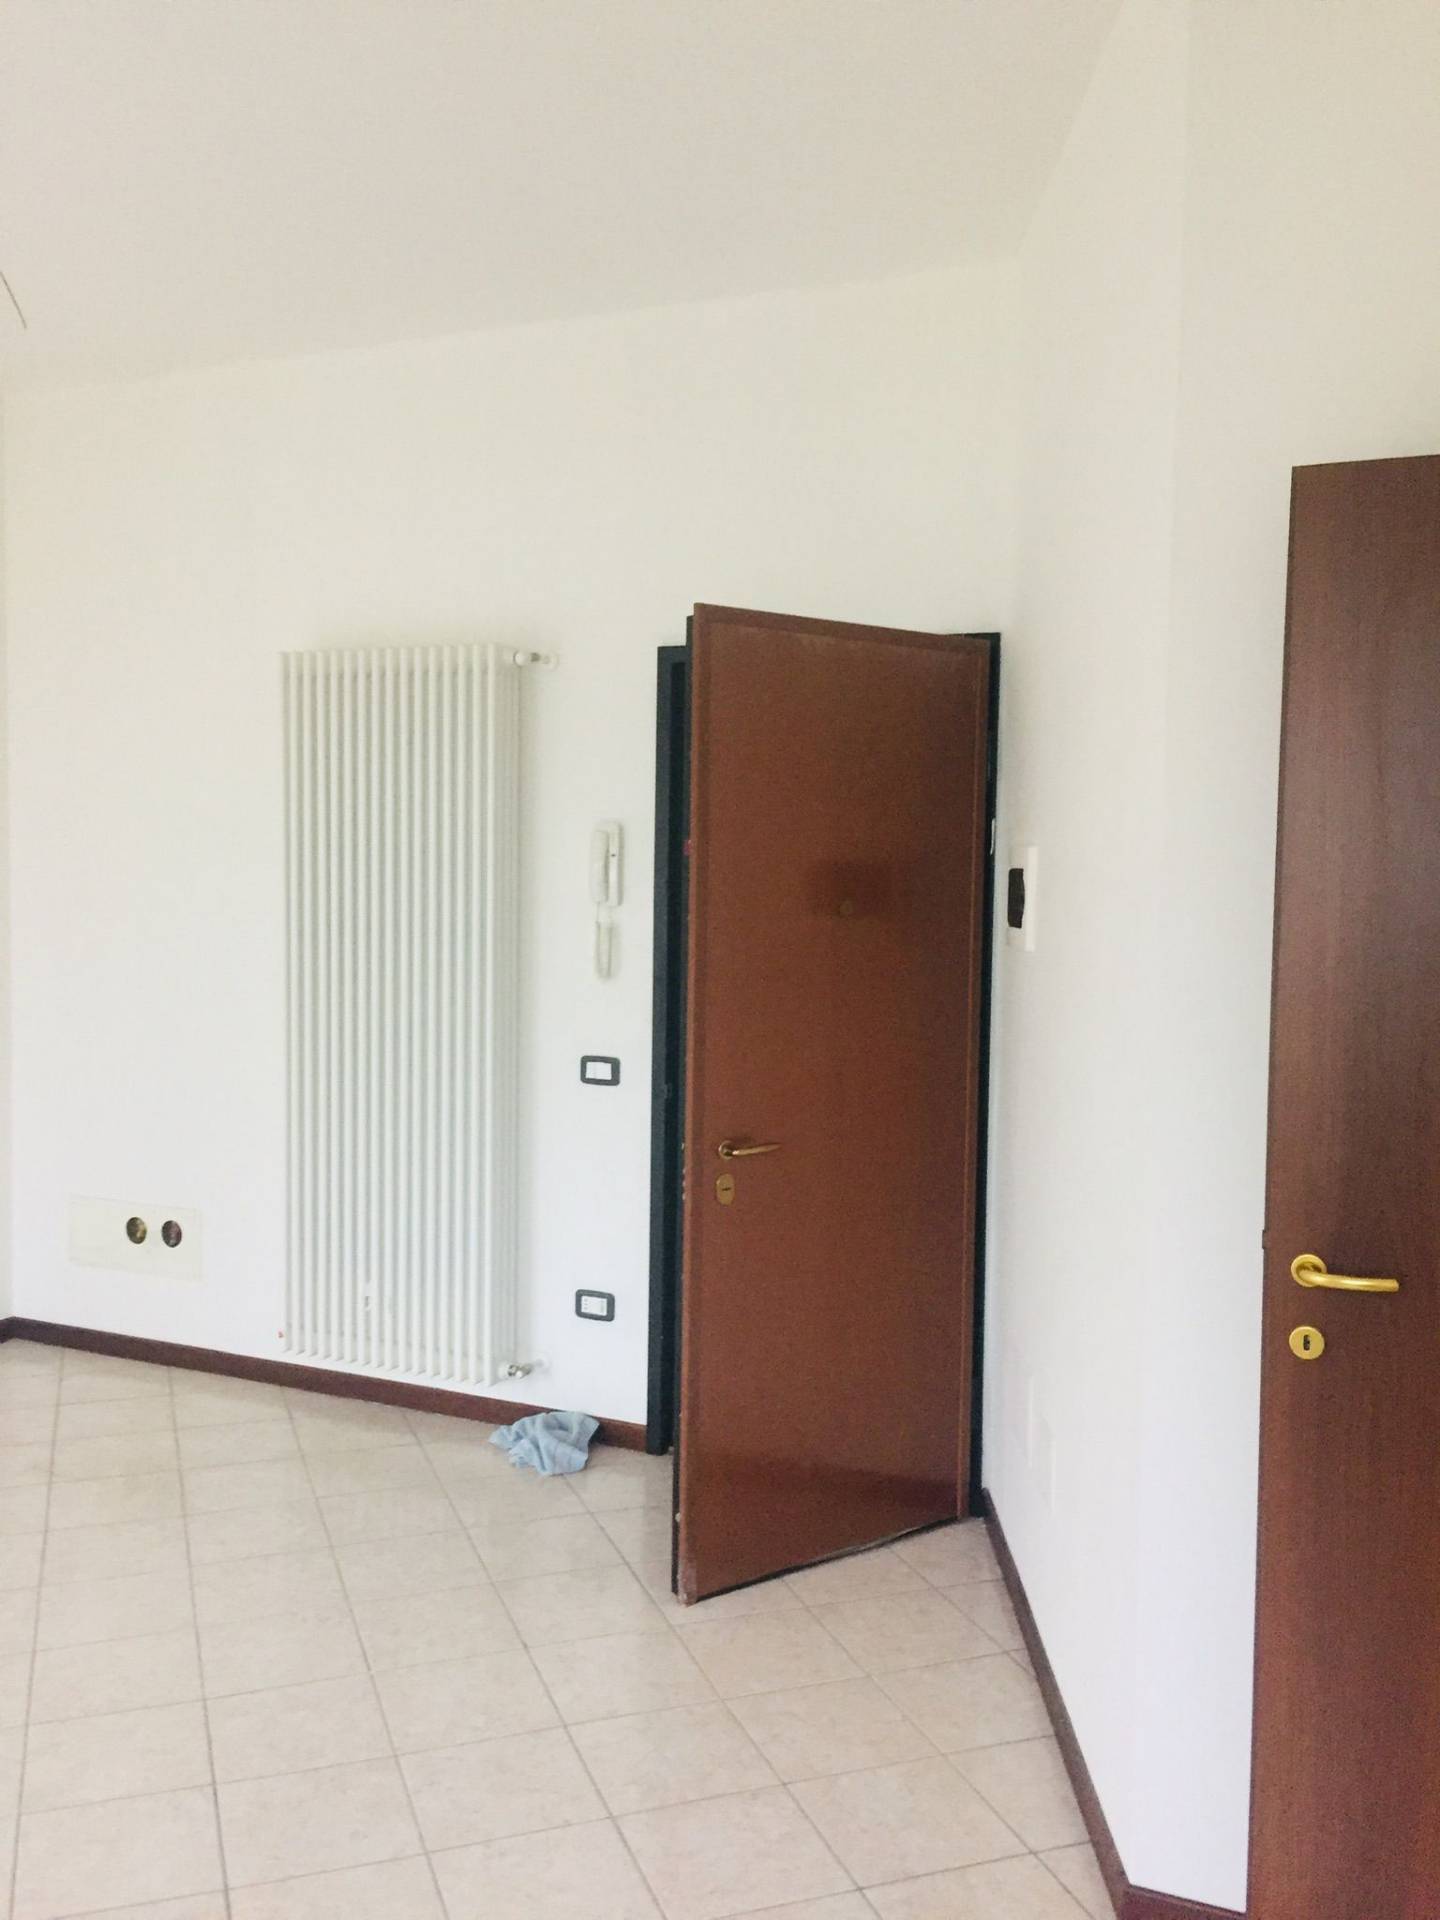 Appartamento in vendita a Tornolo, 1 locali, zona ogno, prezzo € 55.000 | PortaleAgenzieImmobiliari.it